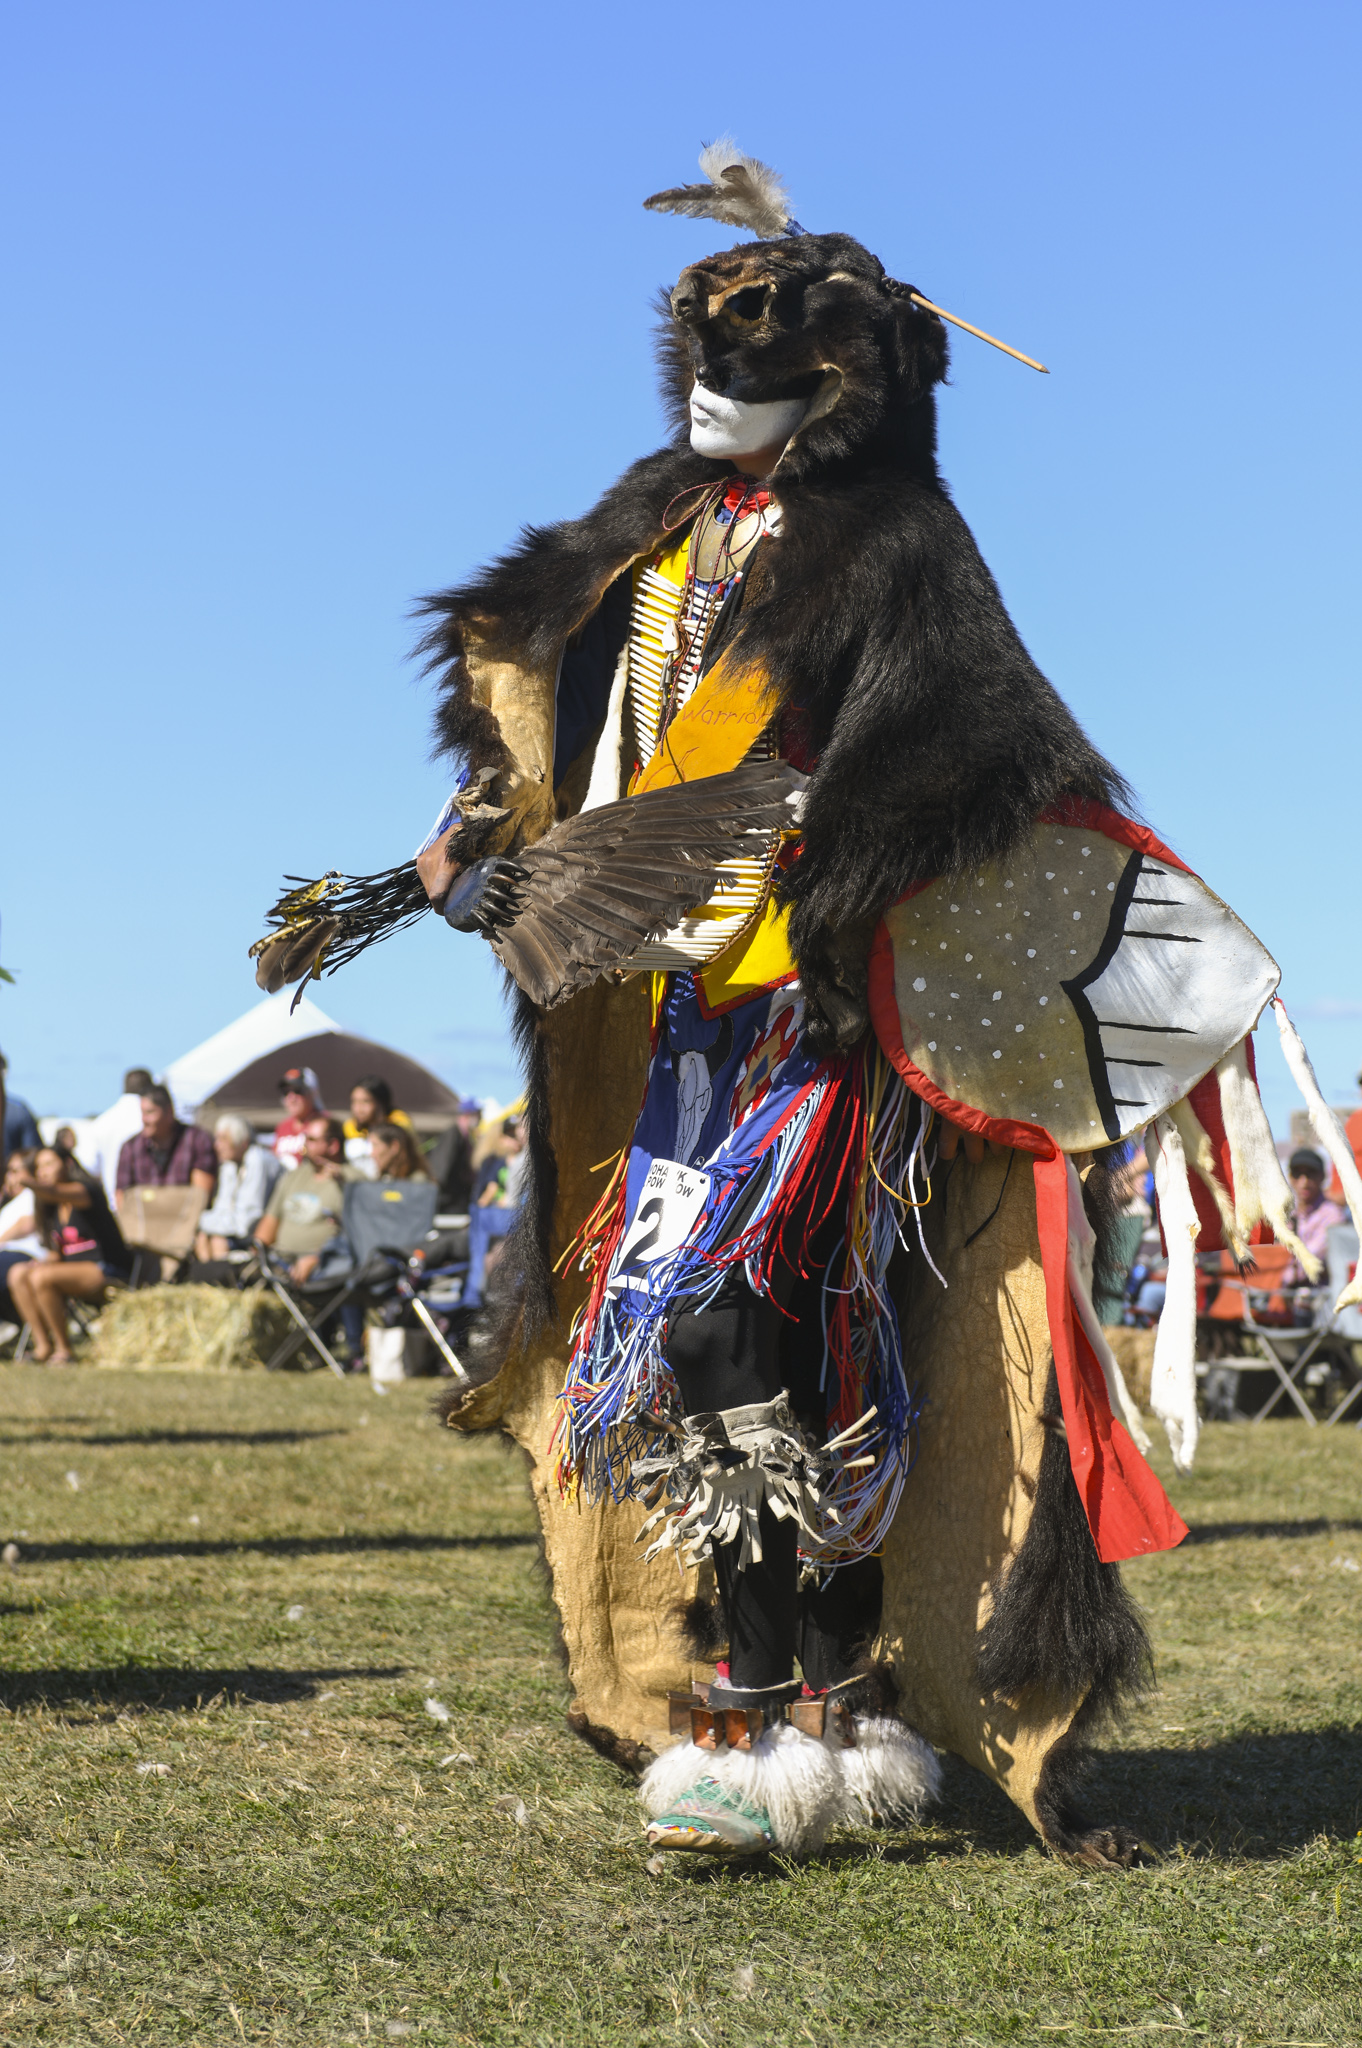 Powwow dancer